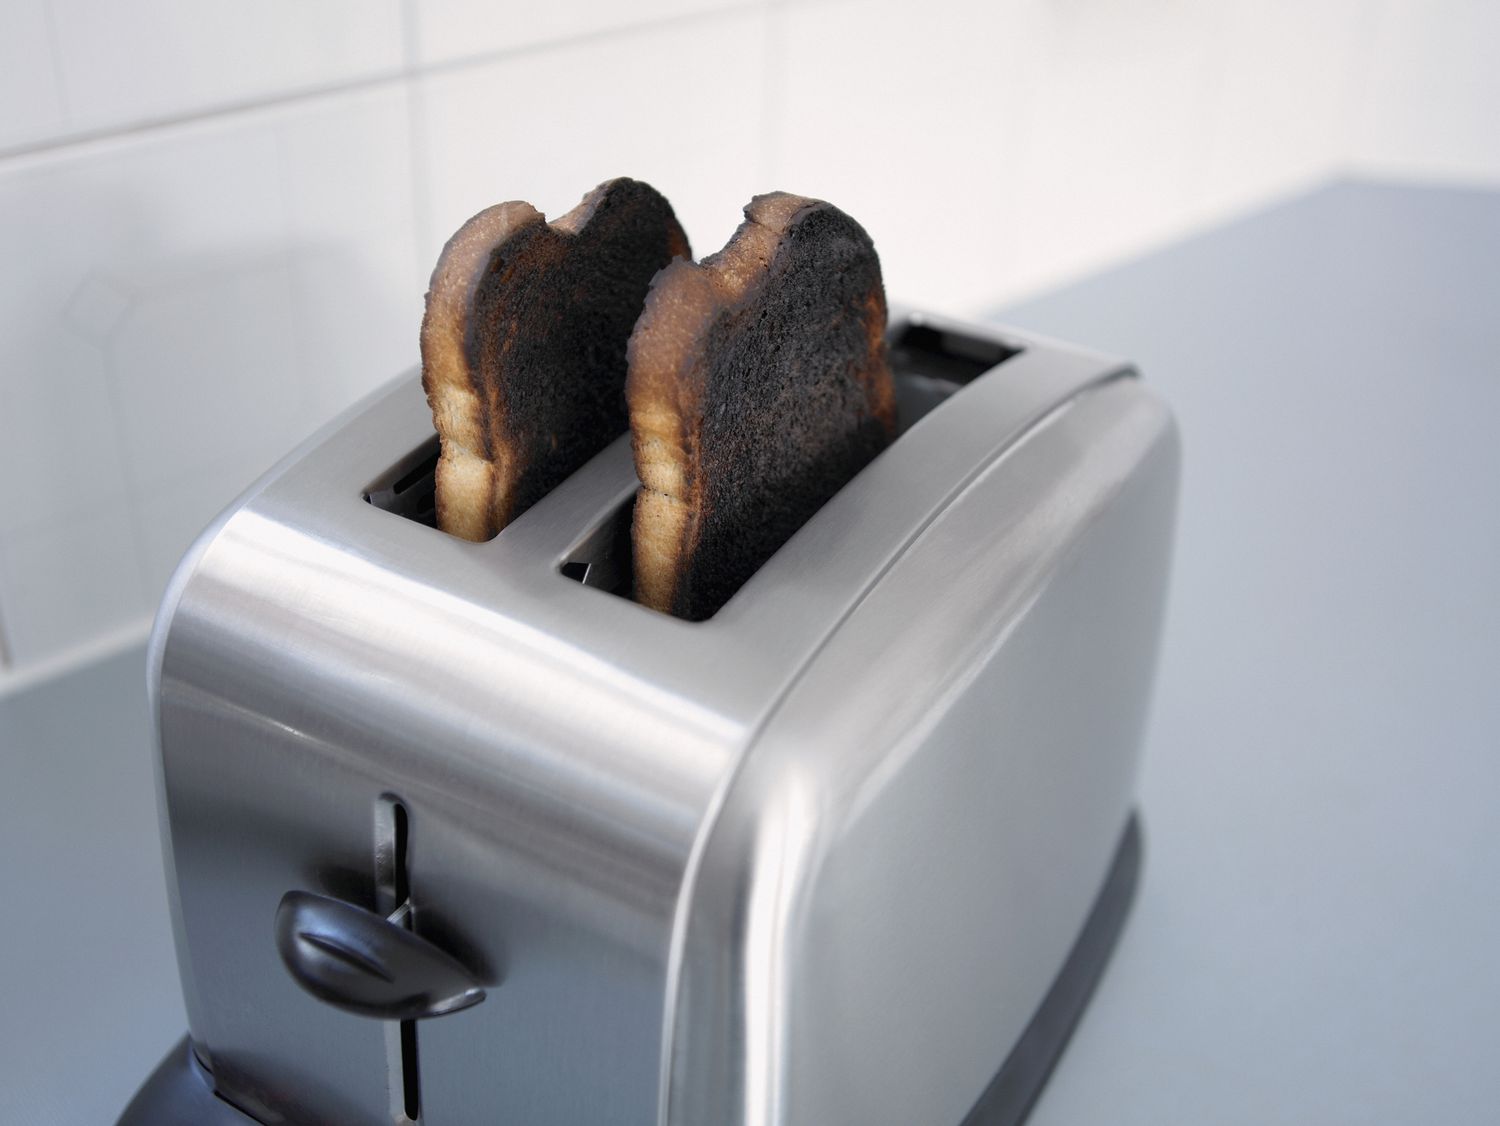 Burnt toast in toaster